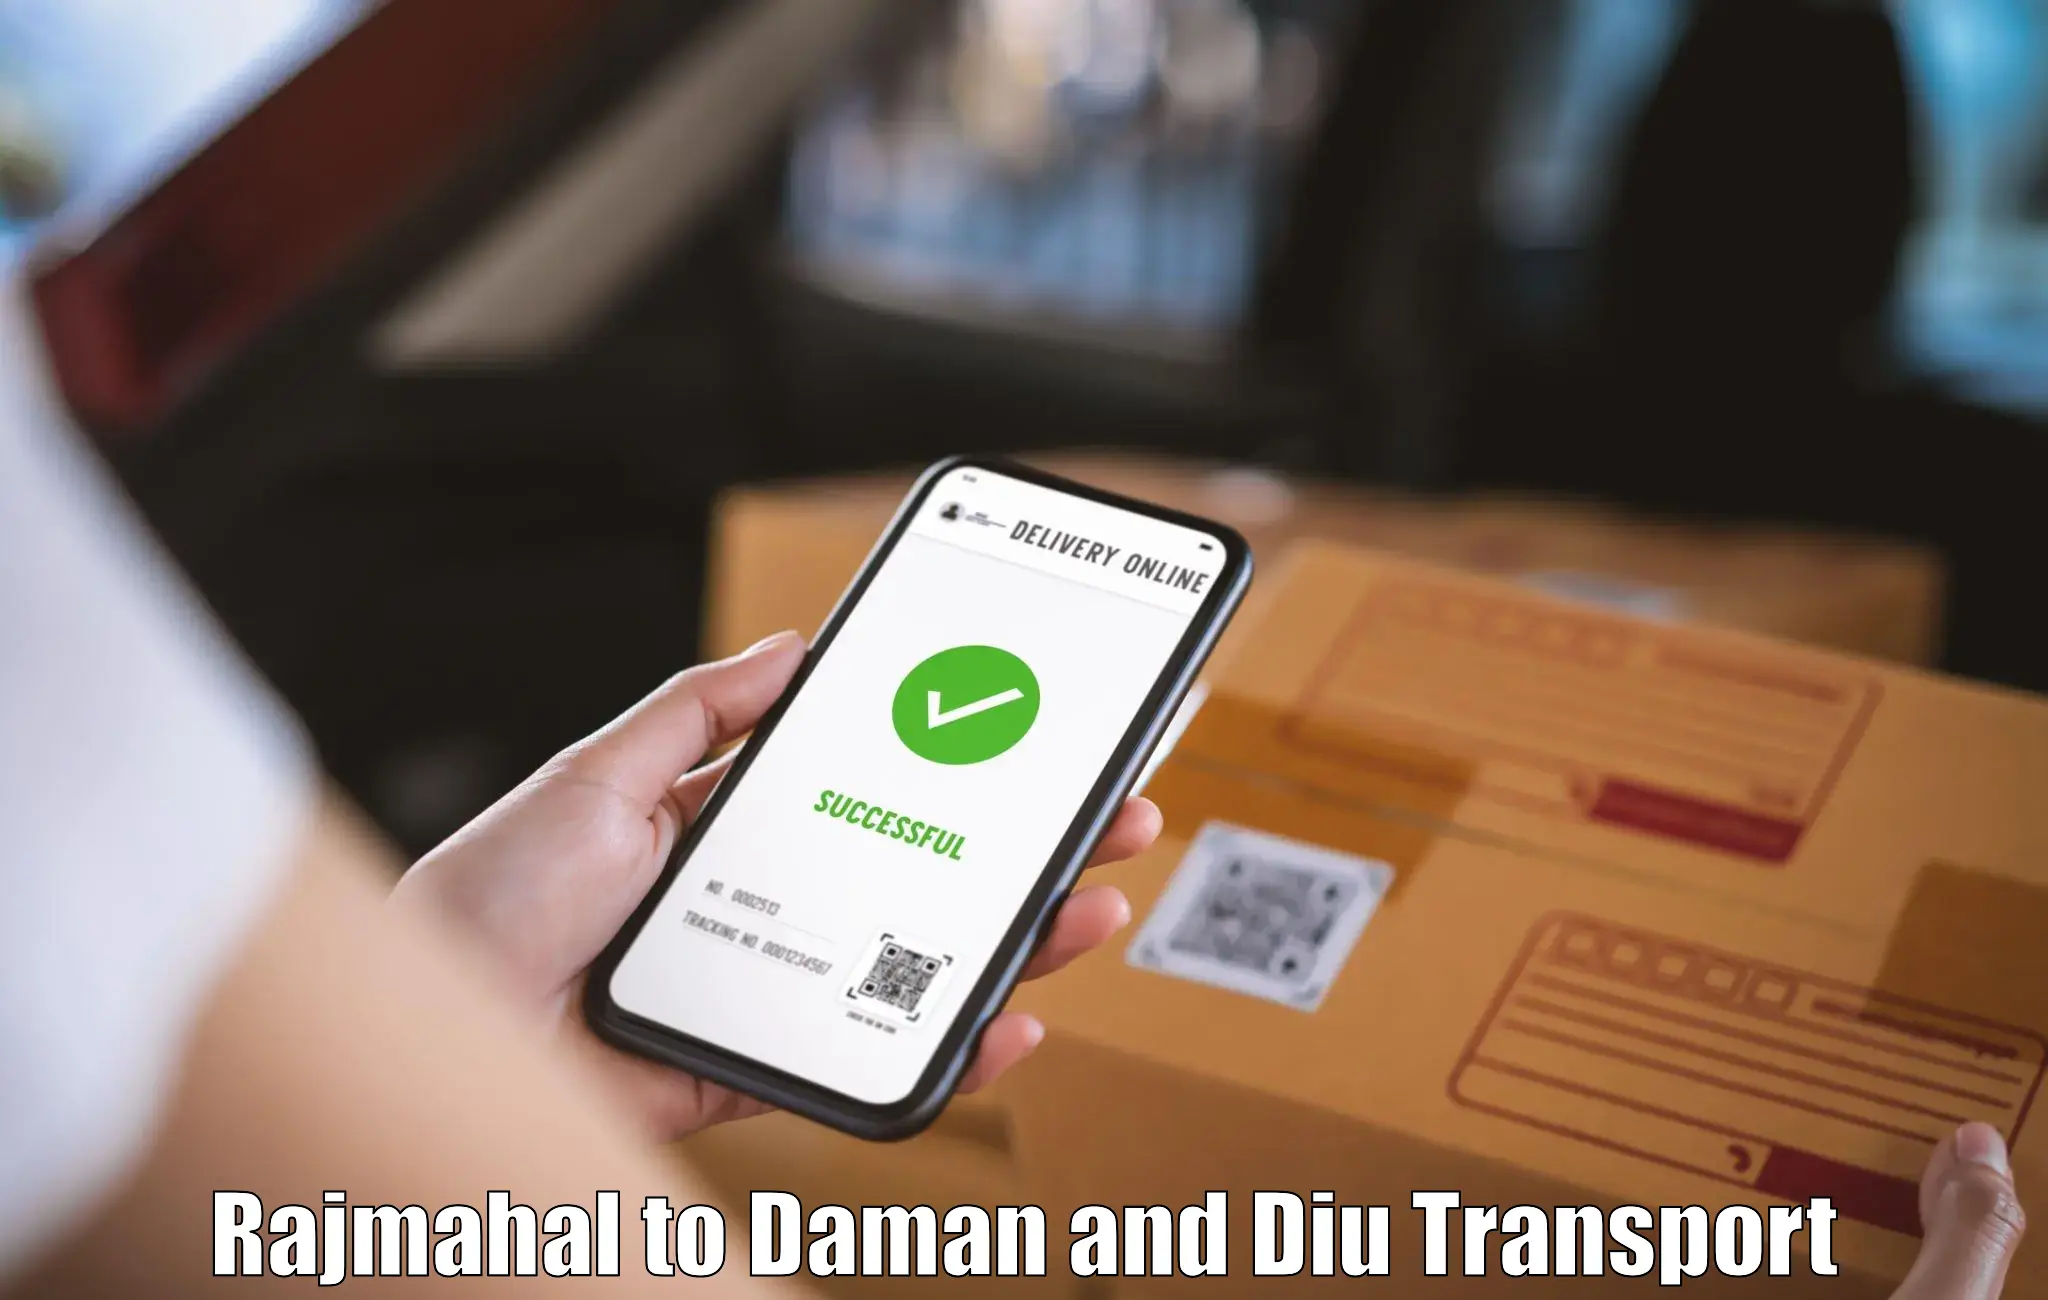 Domestic goods transportation services Rajmahal to Daman and Diu